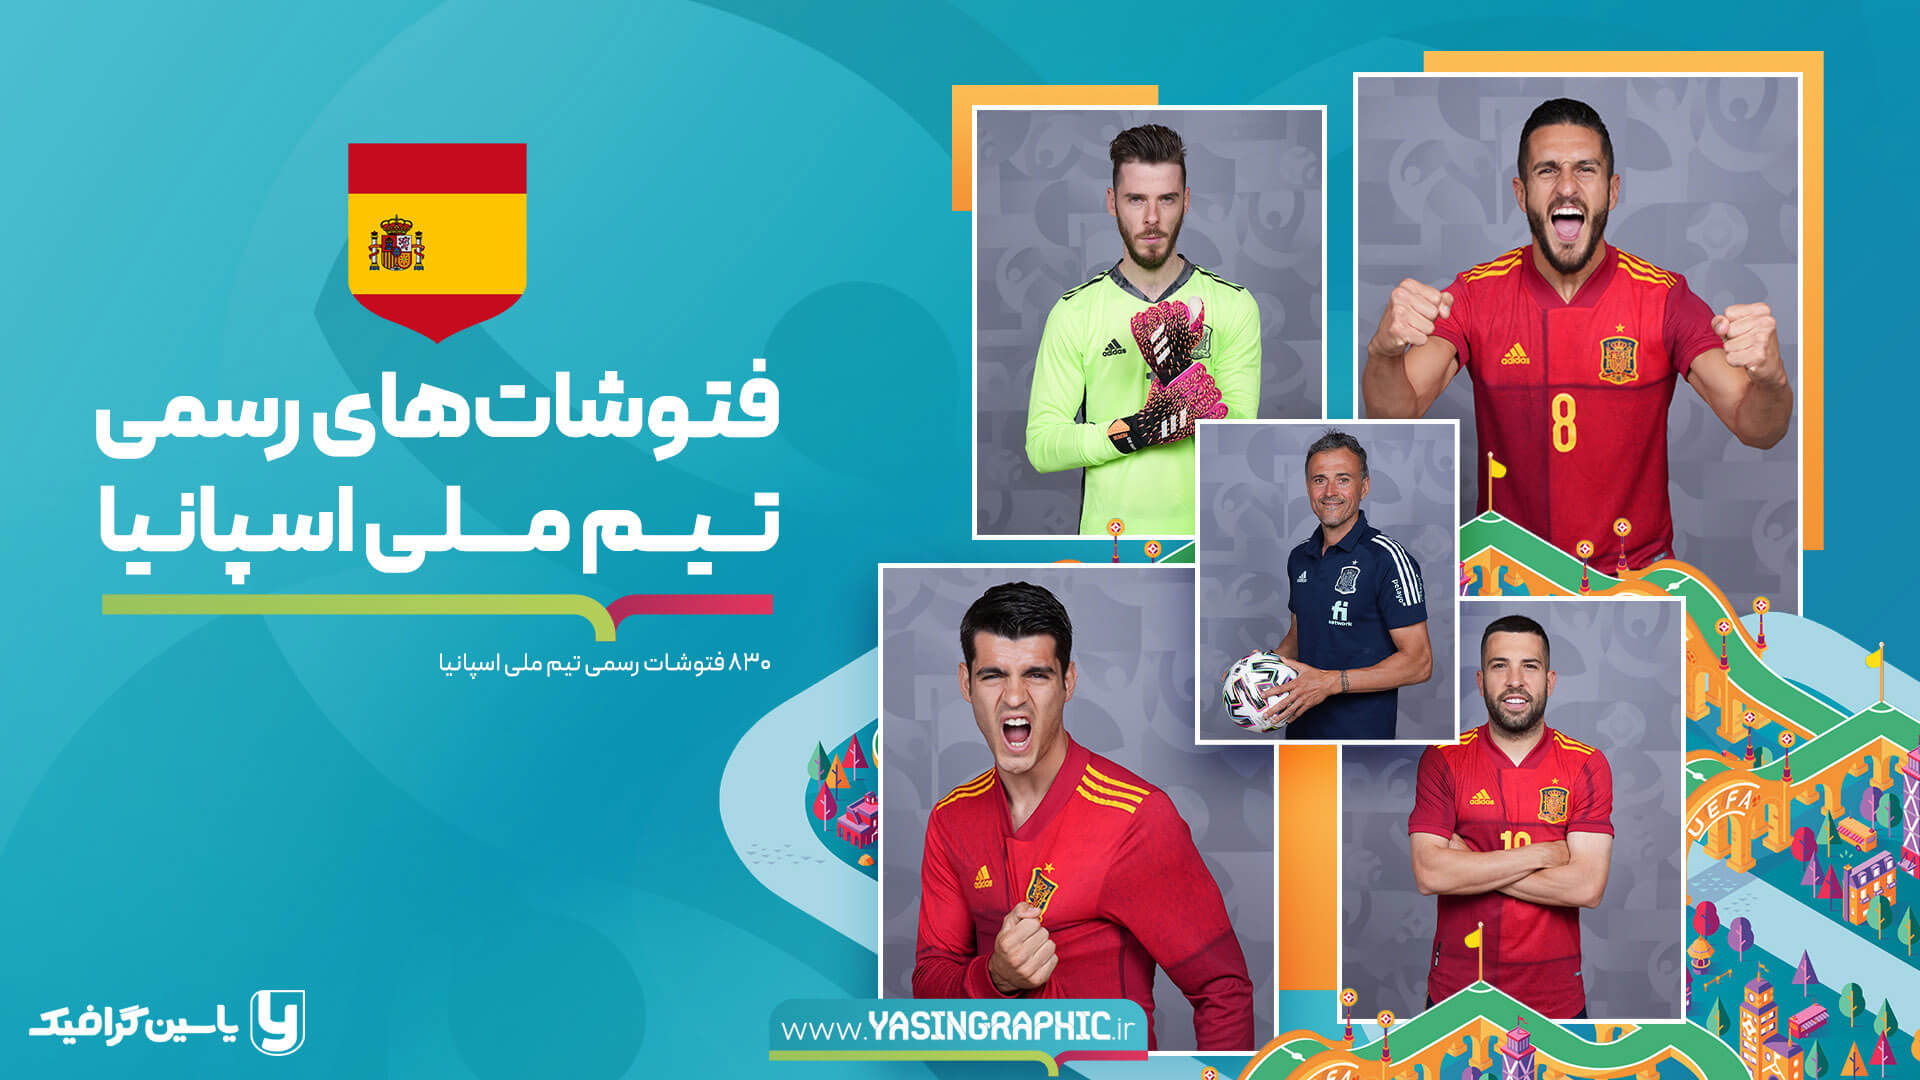 فتوشات های تیم ملی اسپانیا - یورو 2020